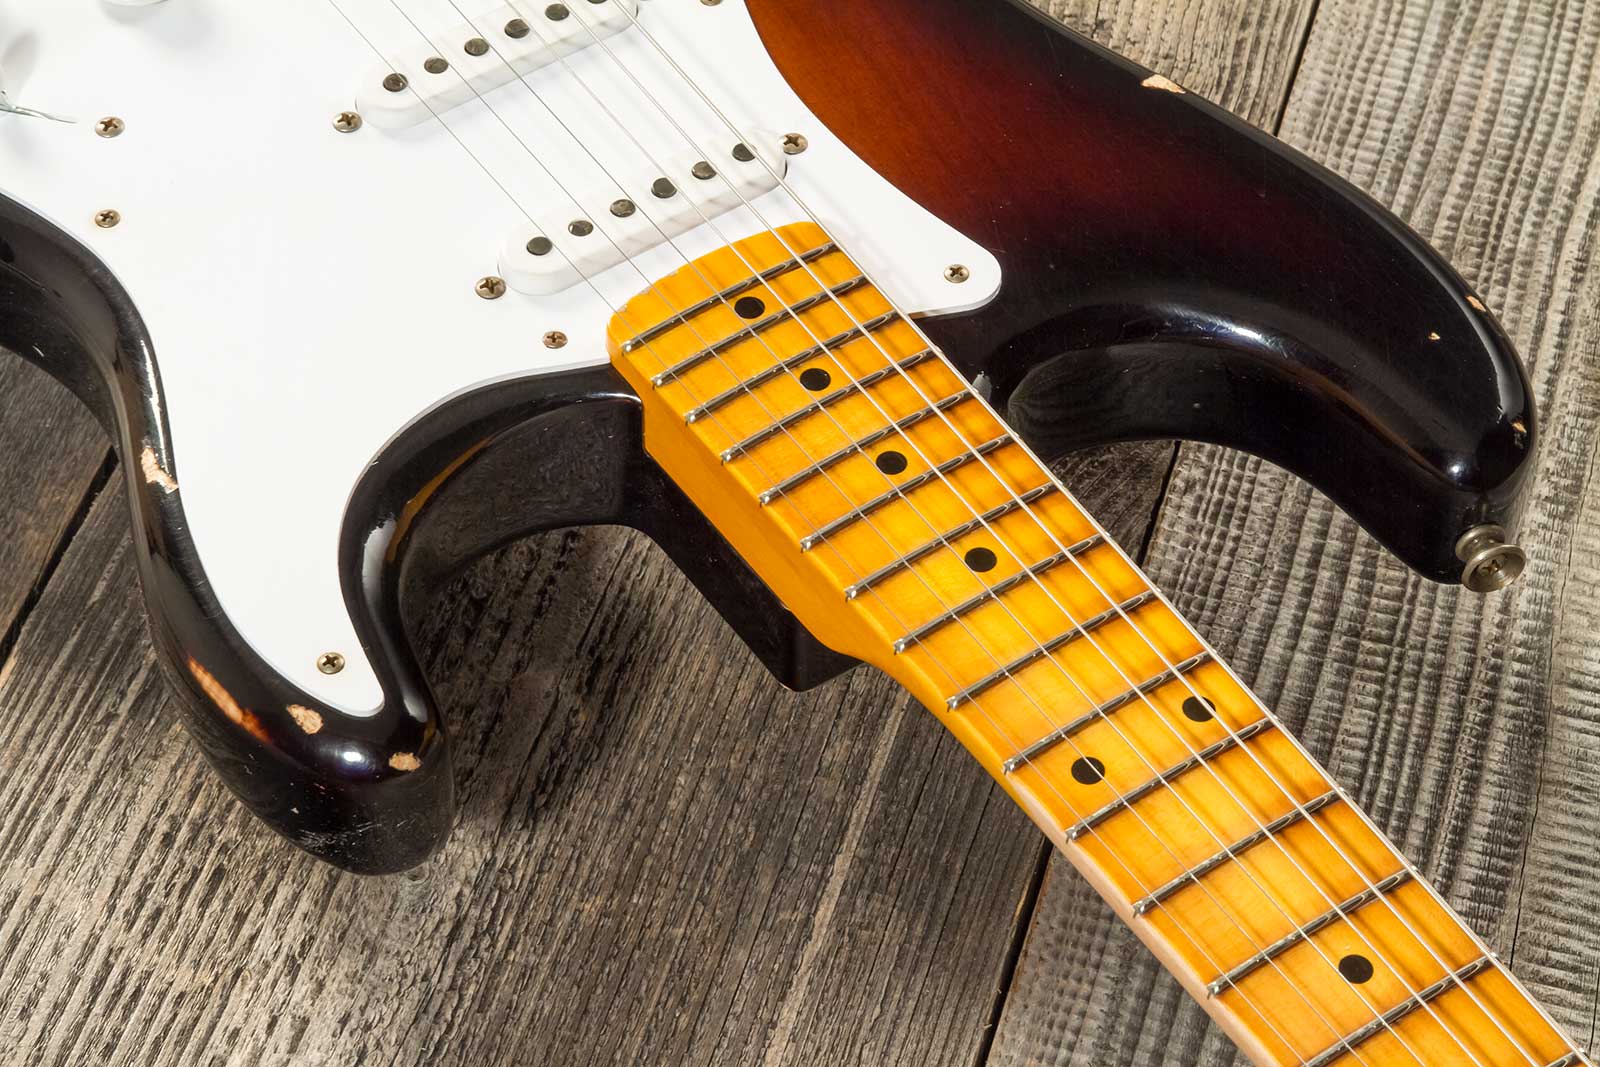 Fender Custom Shop Strat 1954 70th Anniv. 3s Trem Mn #xn4158 - Relic Wide-fade 2-color Sunburst - Str shape electric guitar - Variation 4